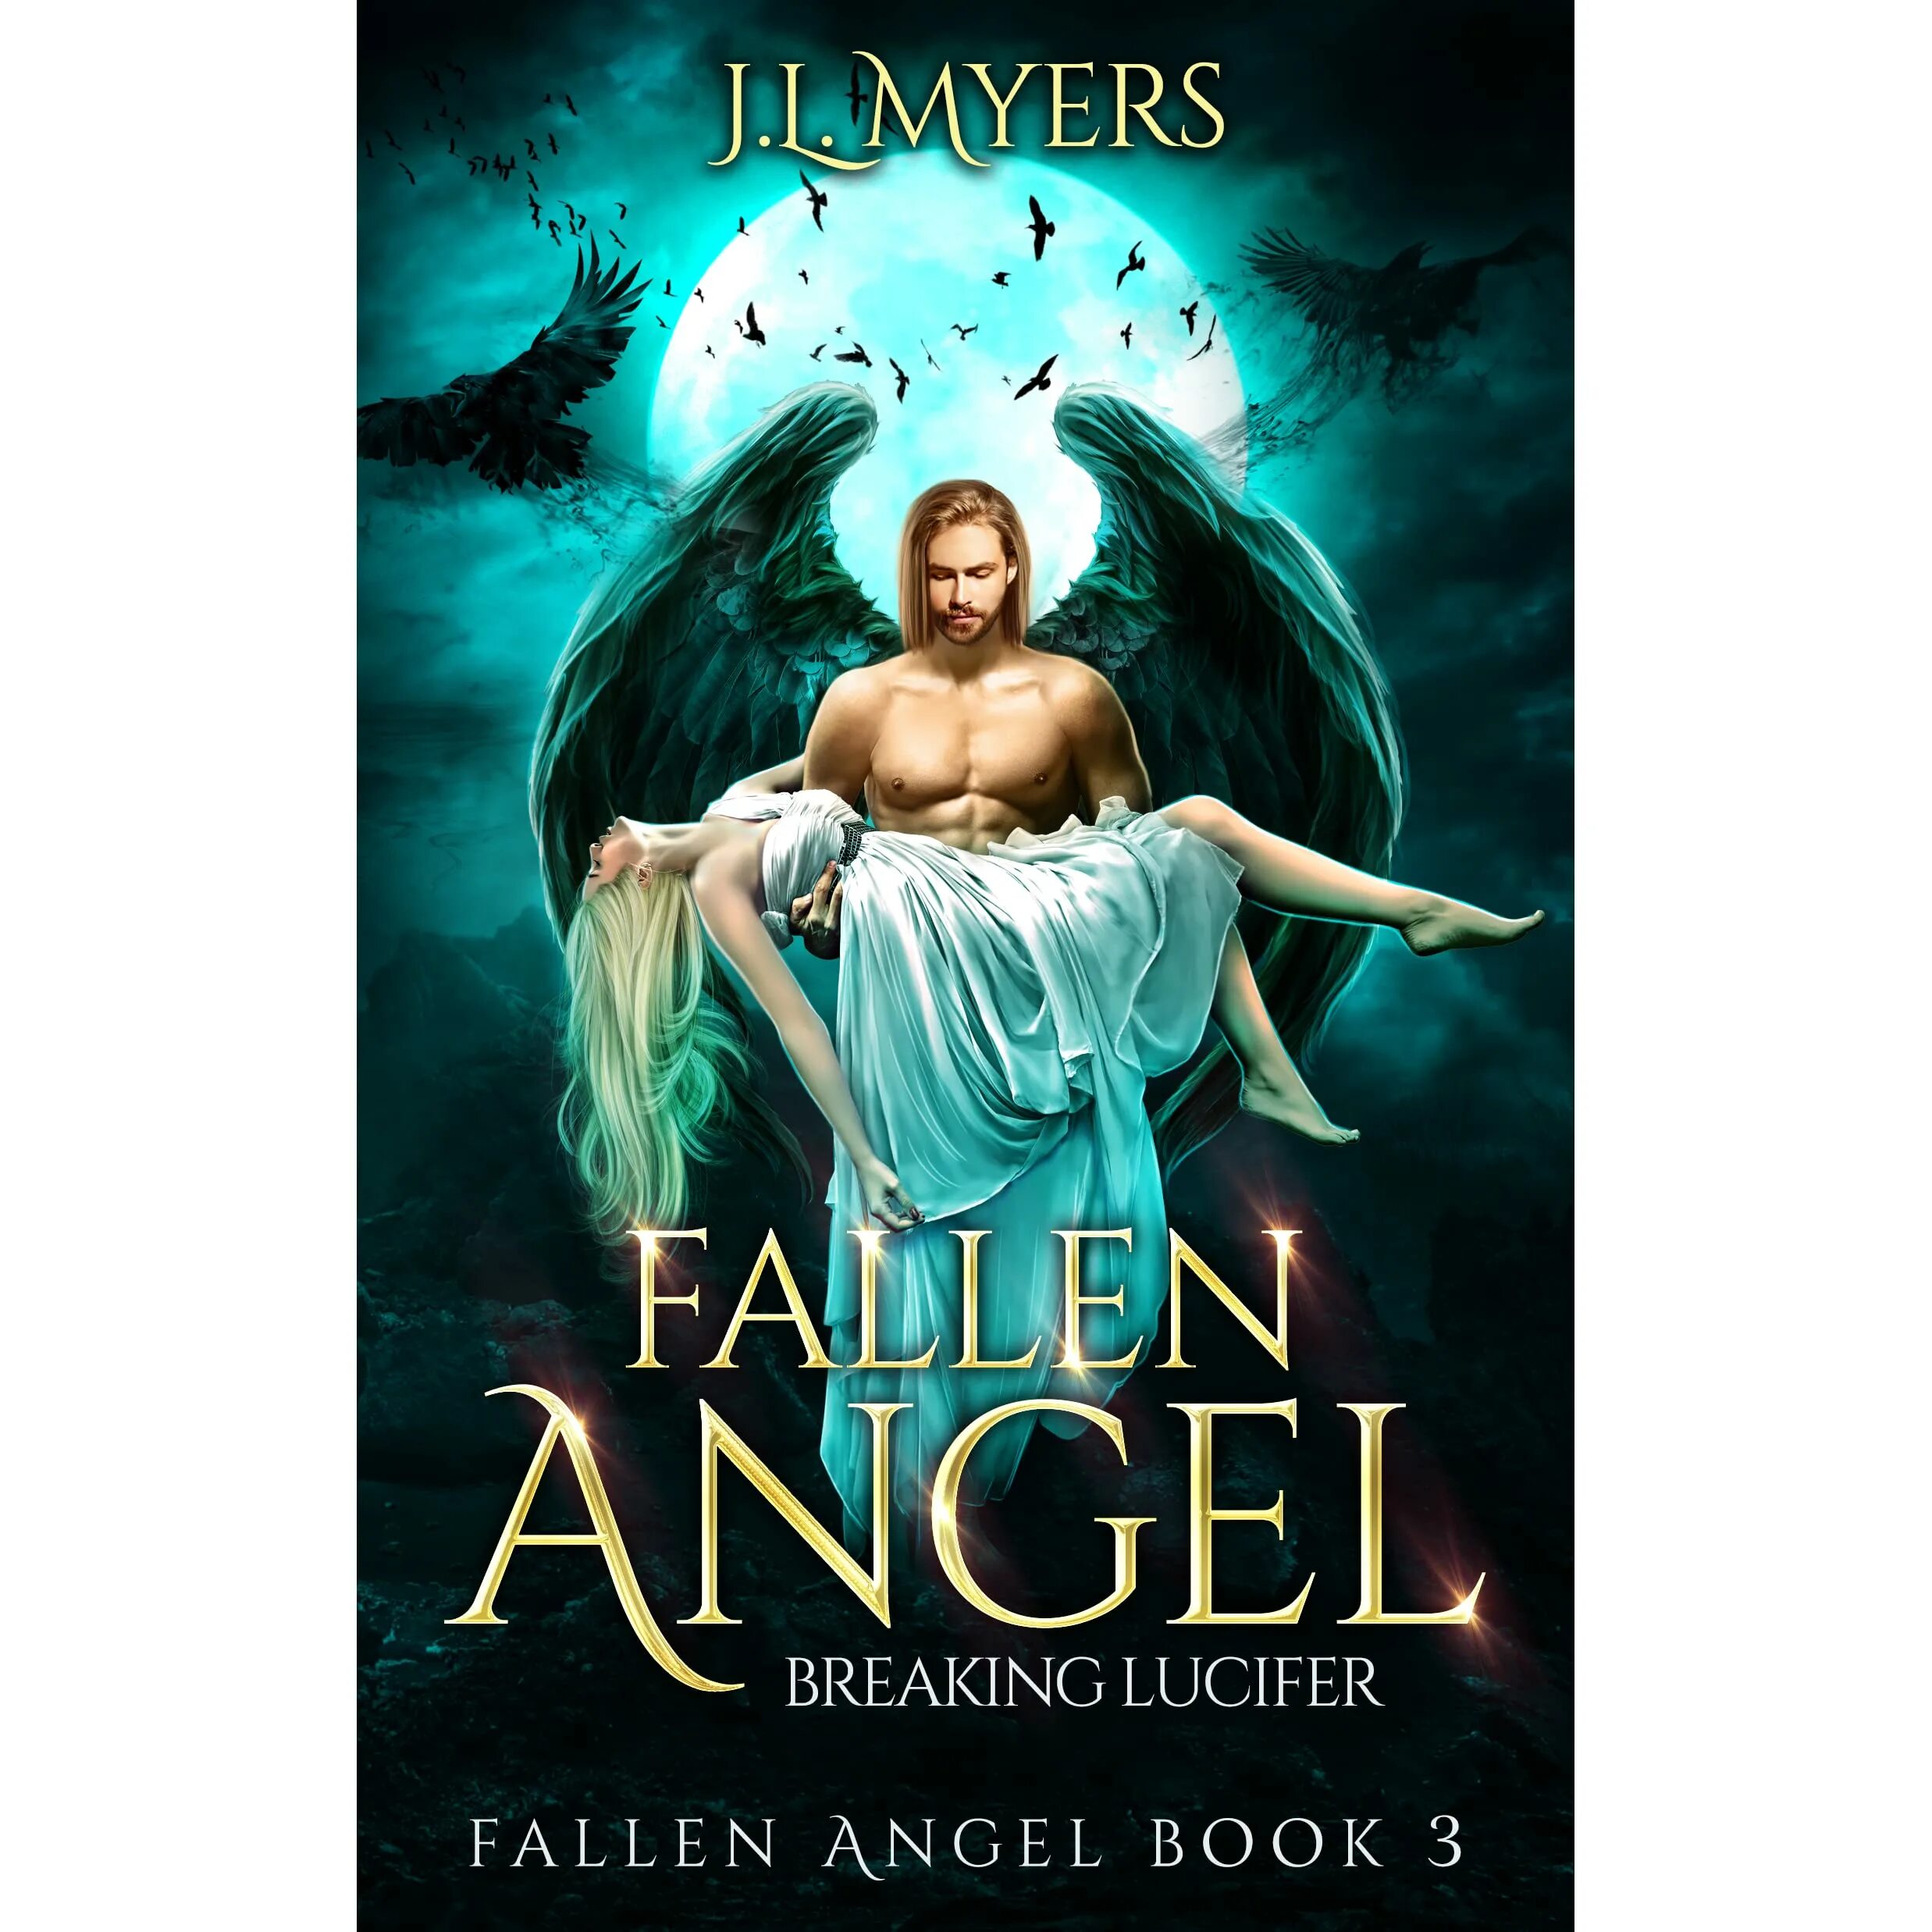 Автор книги ангел. Книга ангелов. Книги фэнтези про ангелов. Падший ангел книга. Ангел с книгой.